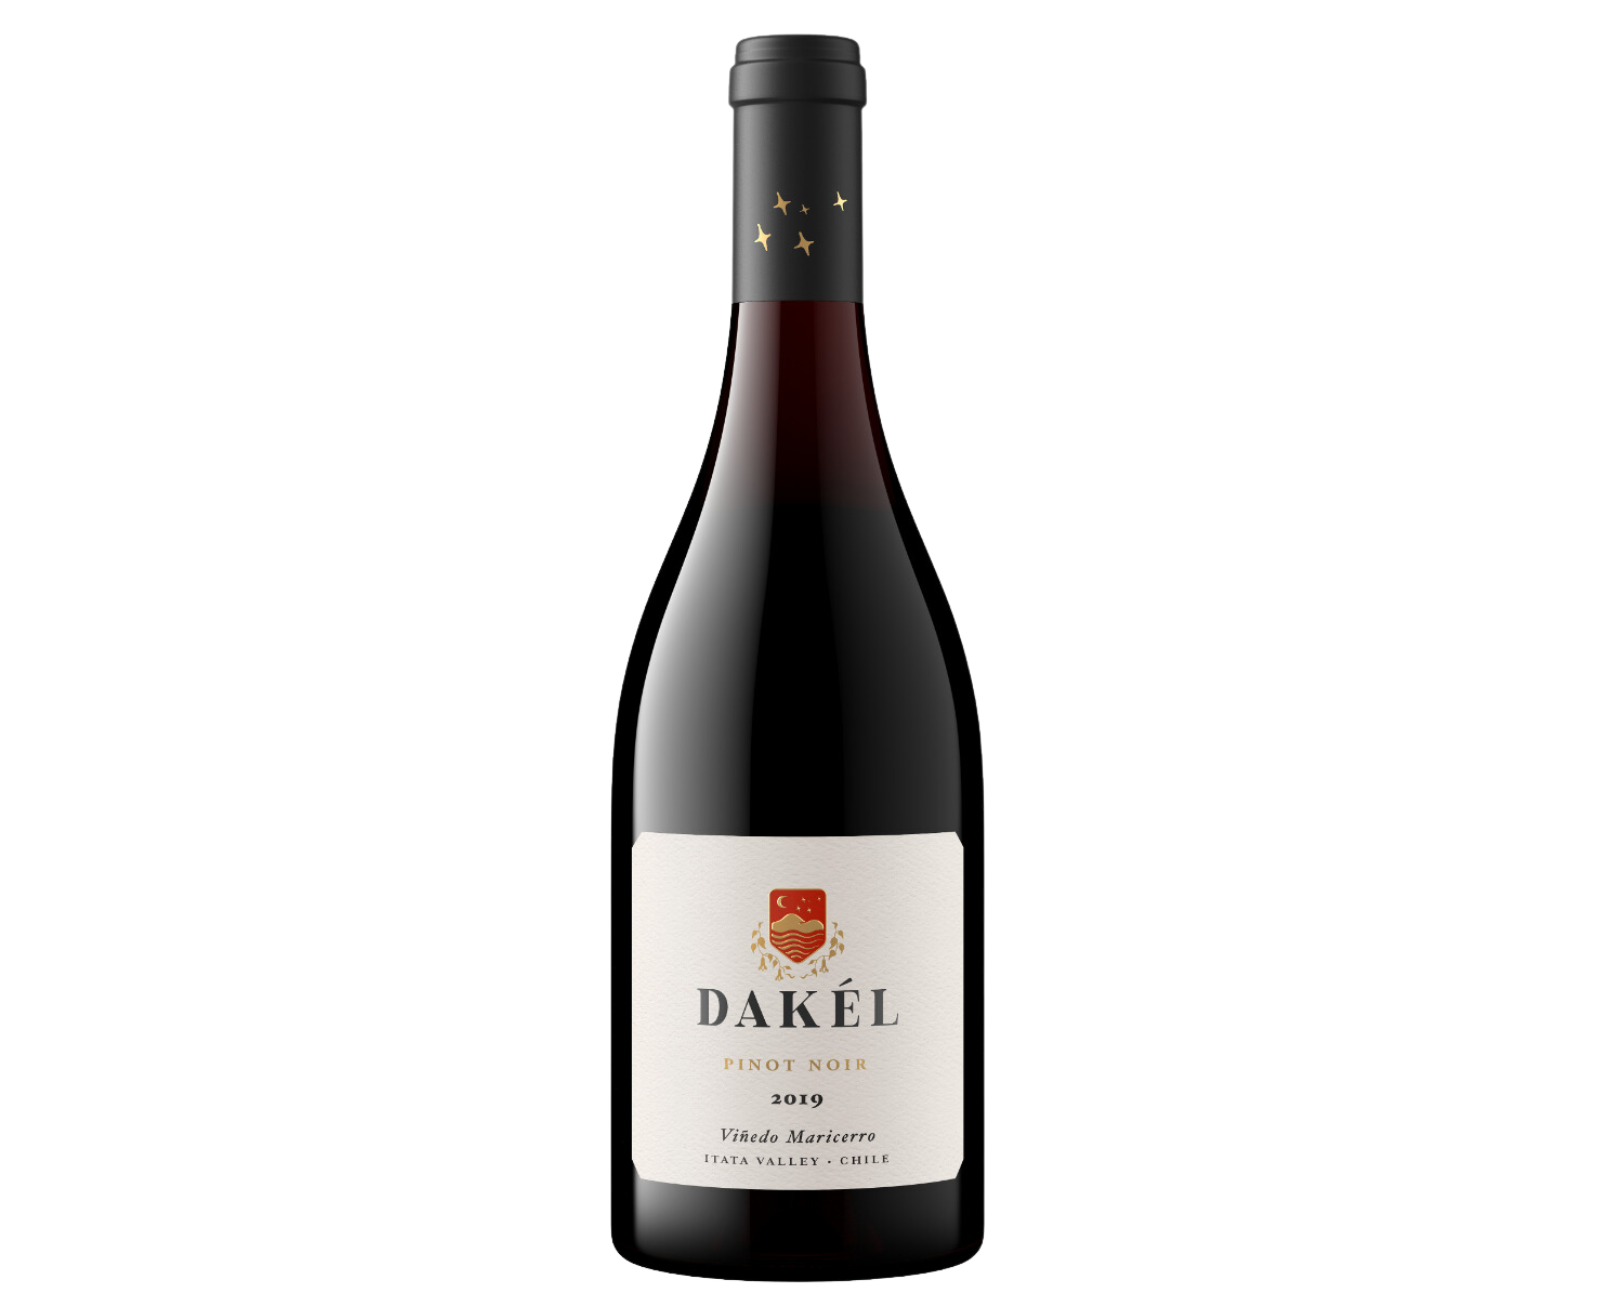 Dakel 2019 Vinedo Maricerro Pinot Noir, Chile